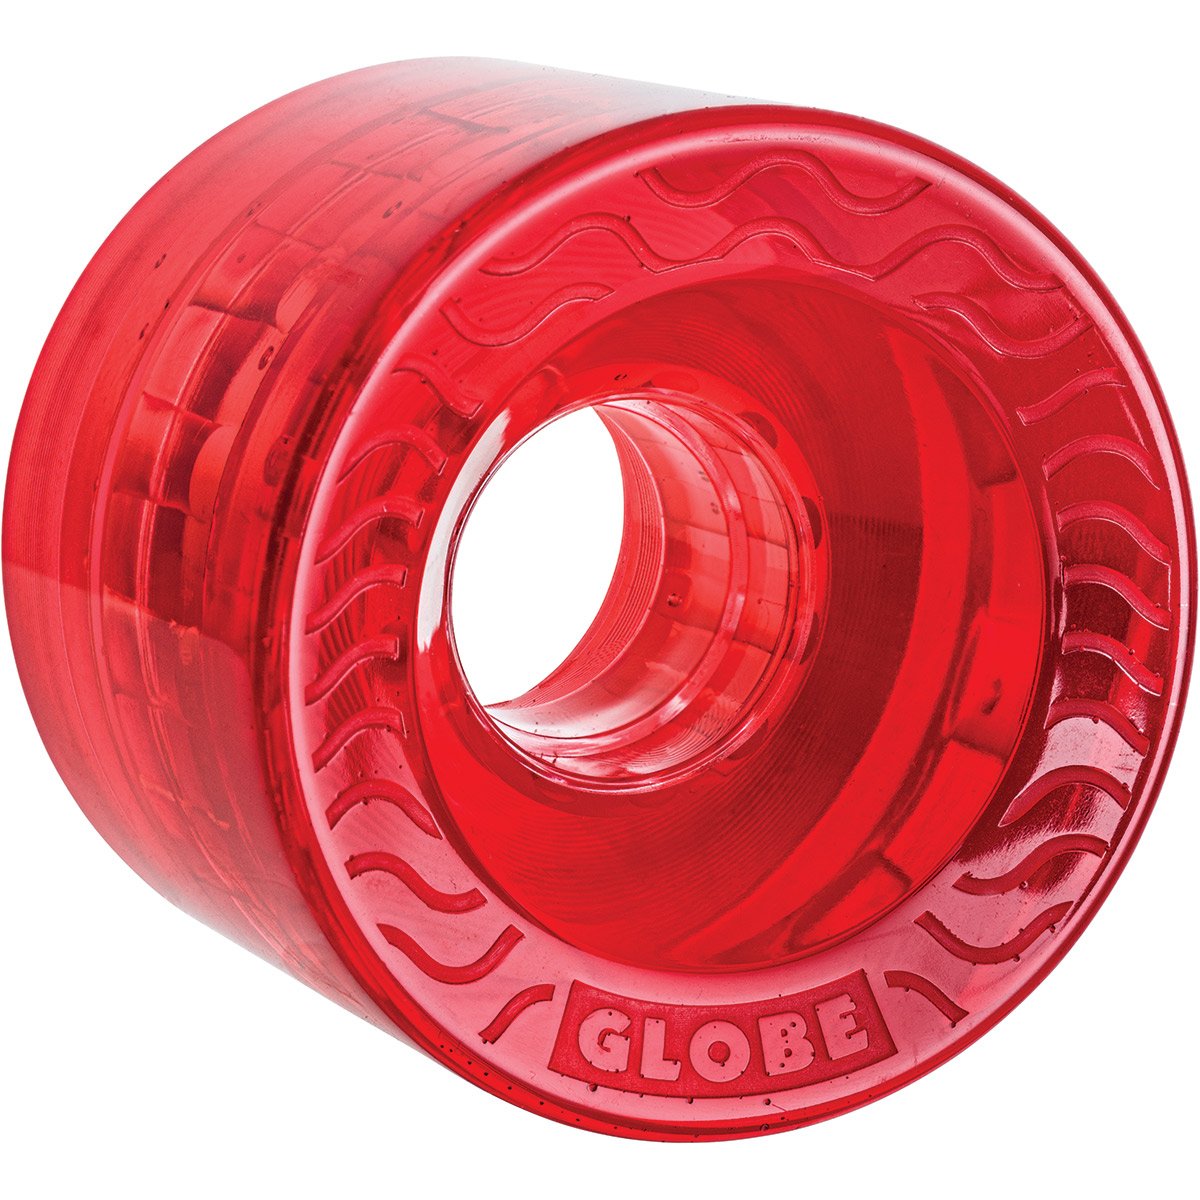 Globe Retro Flex 83A wielen 58 mm clear red